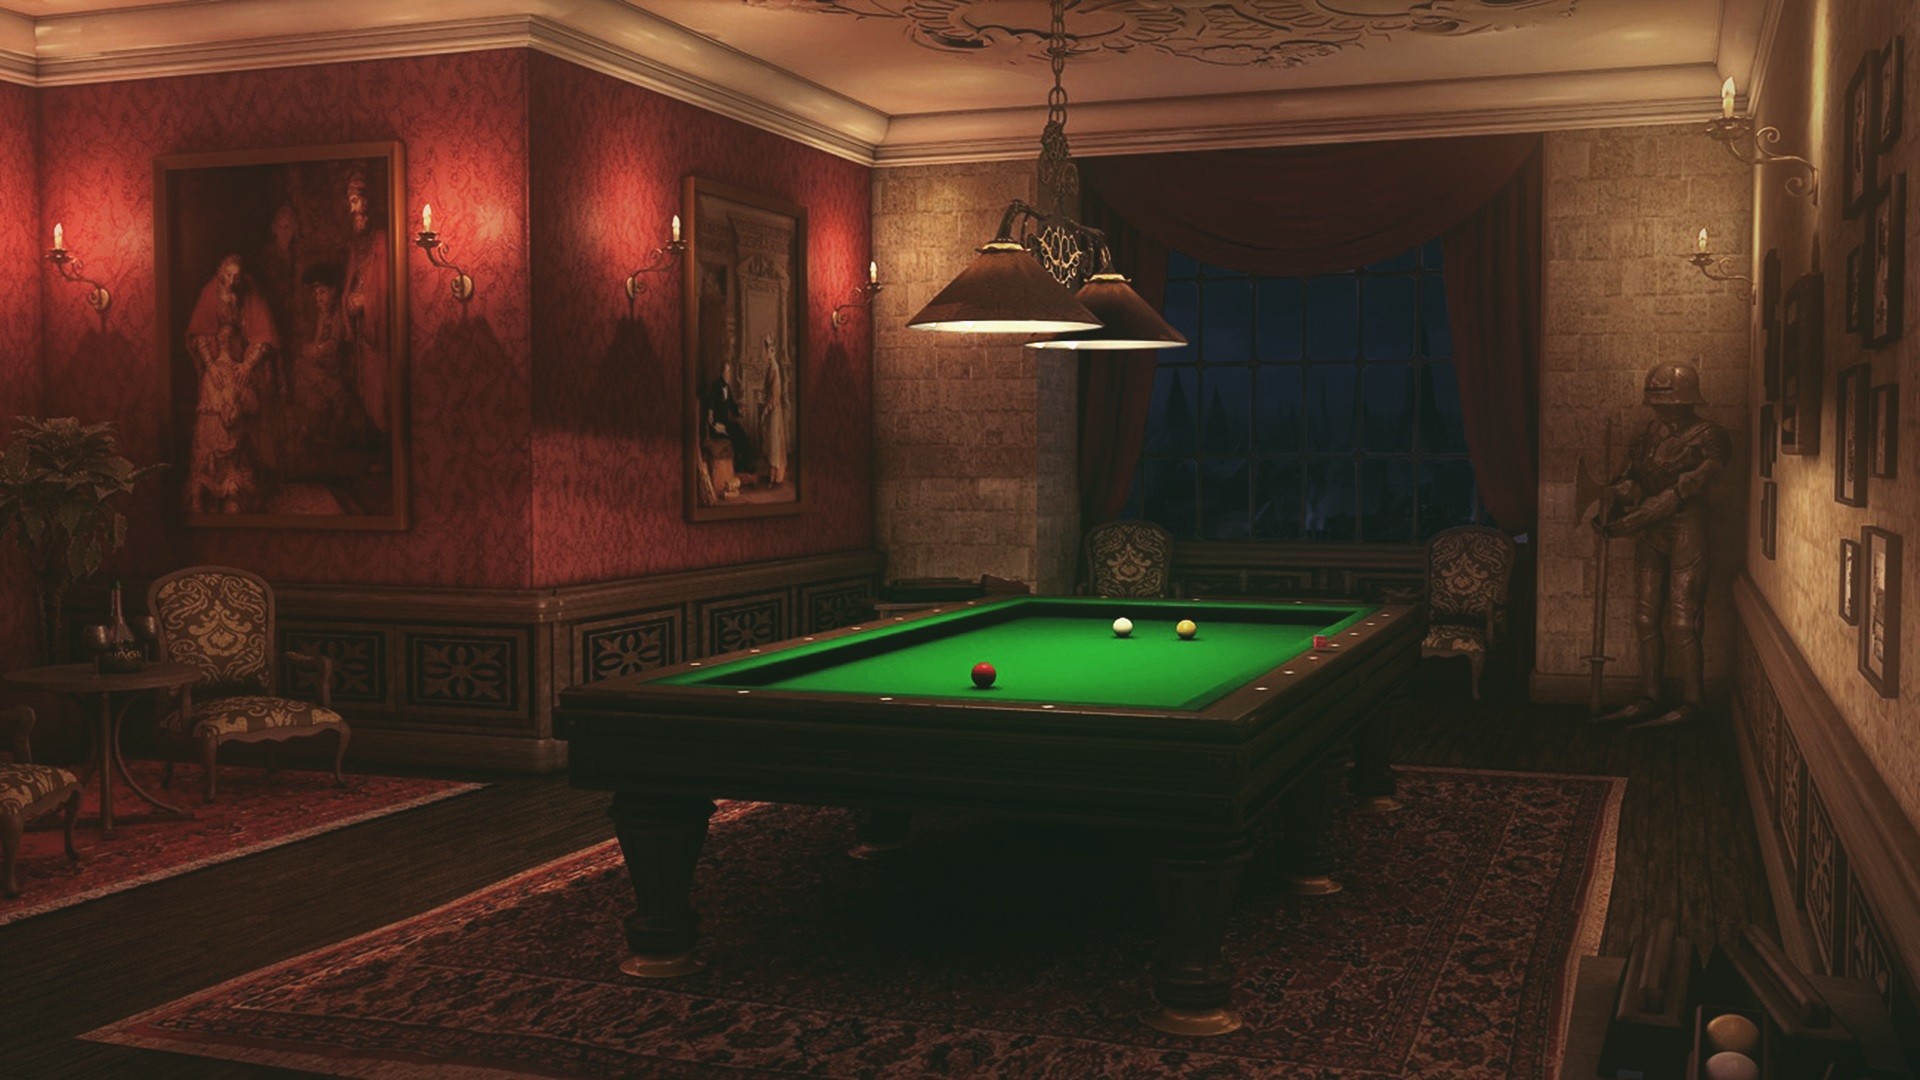 Billiards Room Interior Design 1920x1080